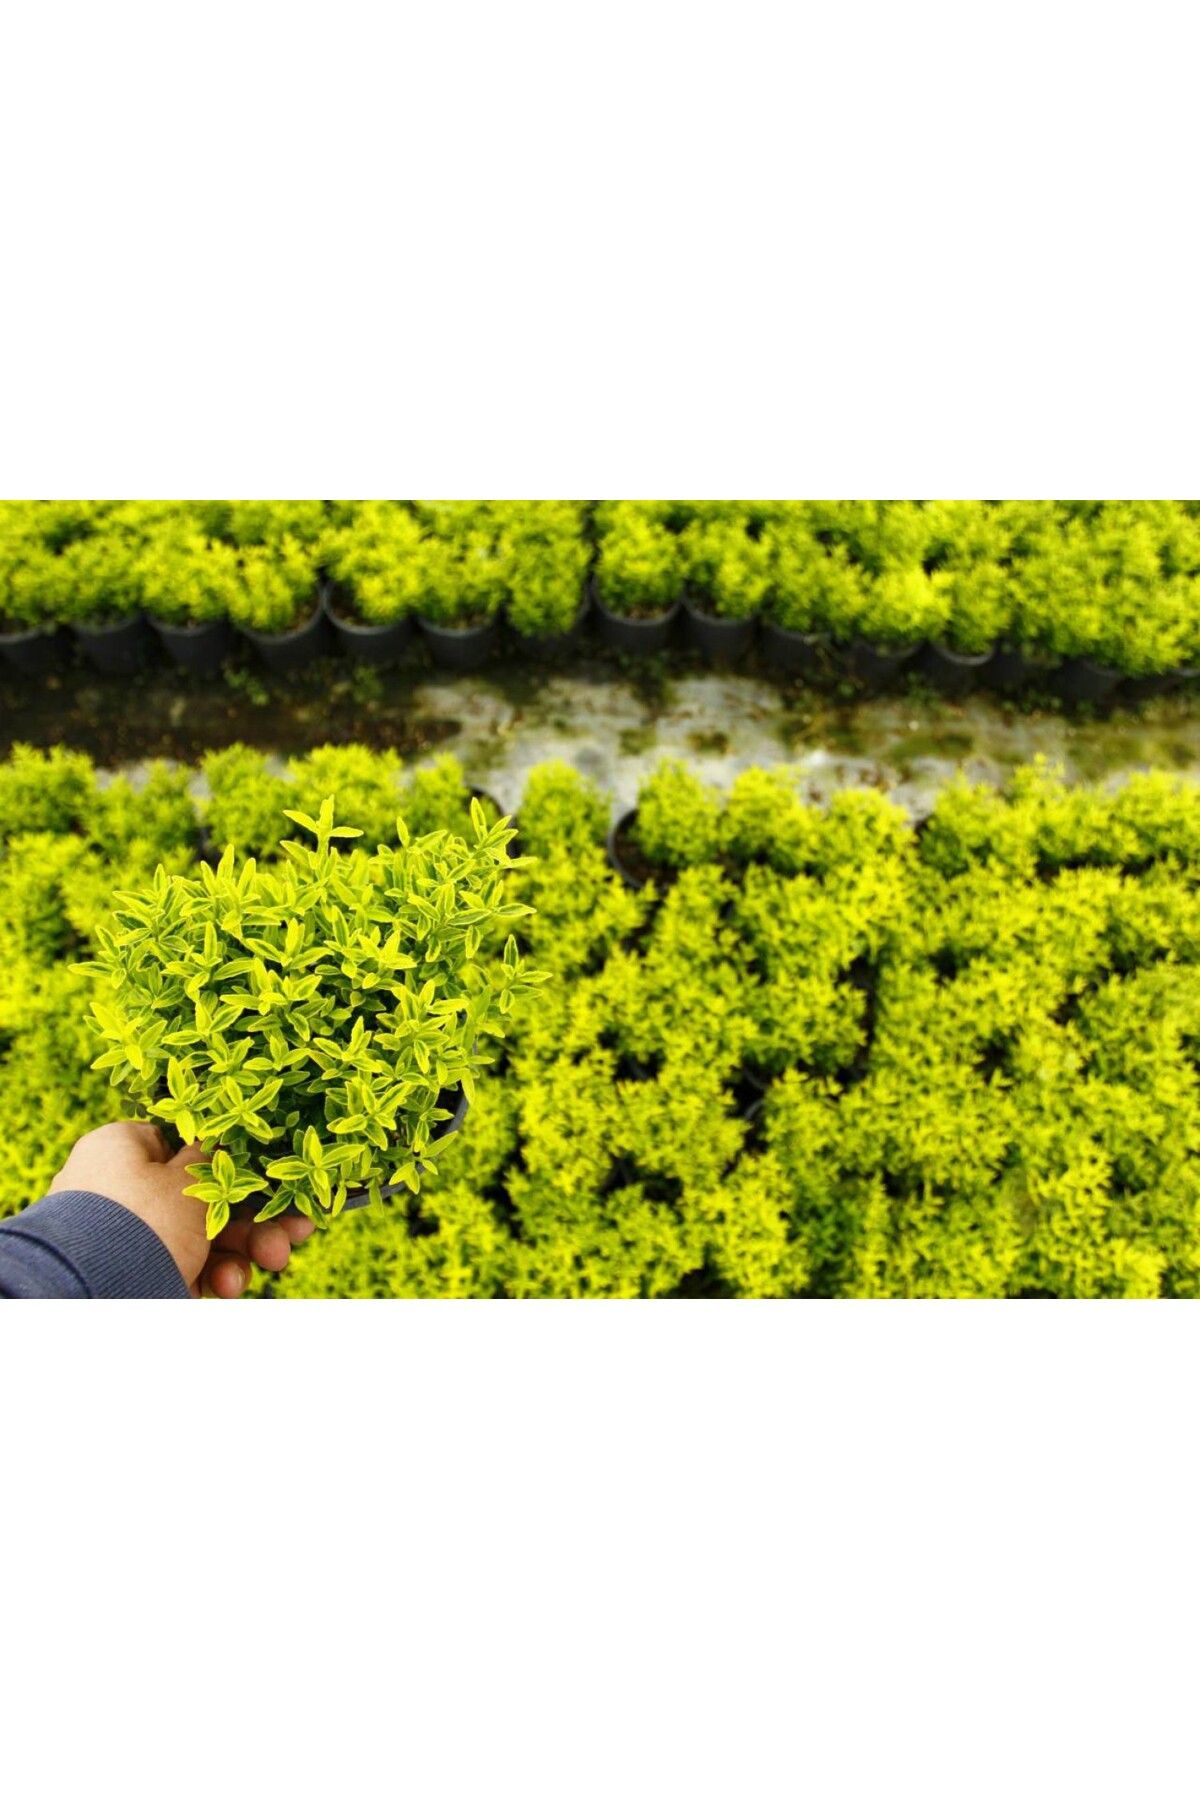 Tunç Botanik Altuni Çıtır Taflan 10 Adet Paket - Sarı Çit Bitkisi